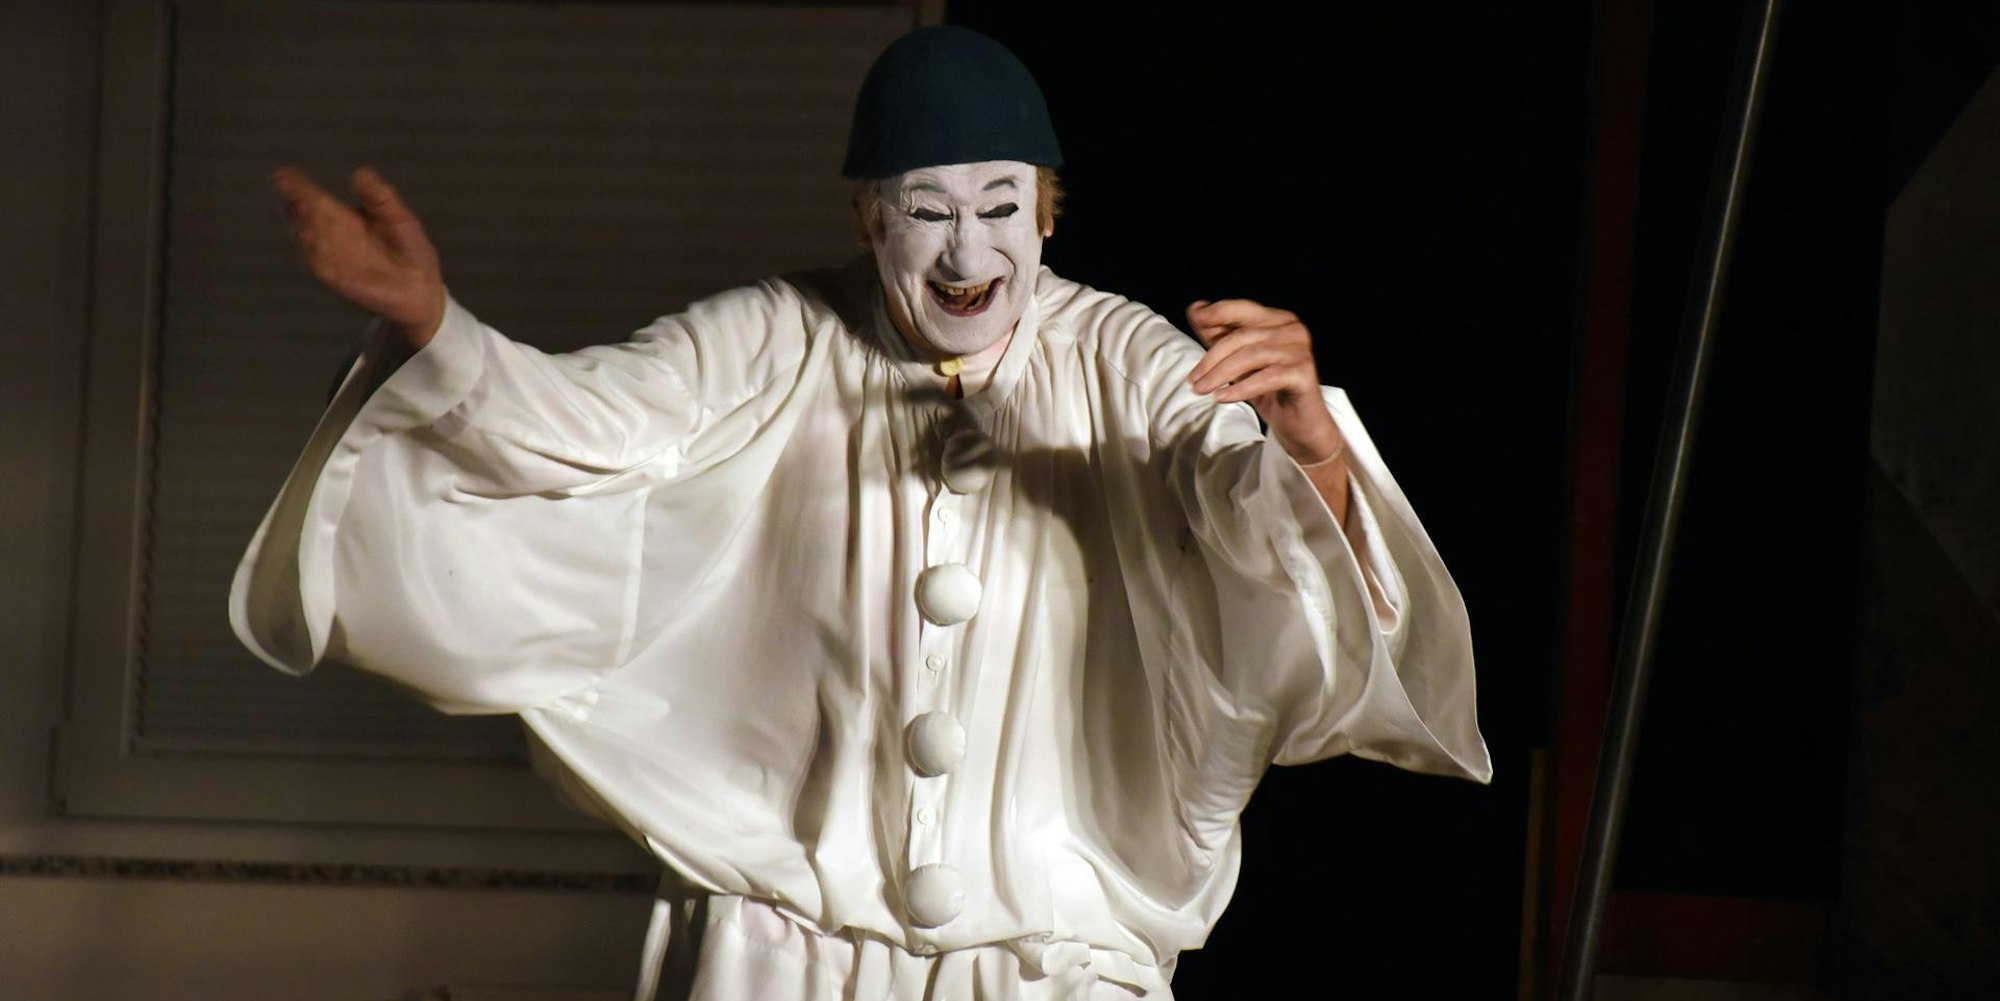 Milan Sládek steht in weißer Pantomime-Kleidung und weiß bemalten Gesicht lachend da.